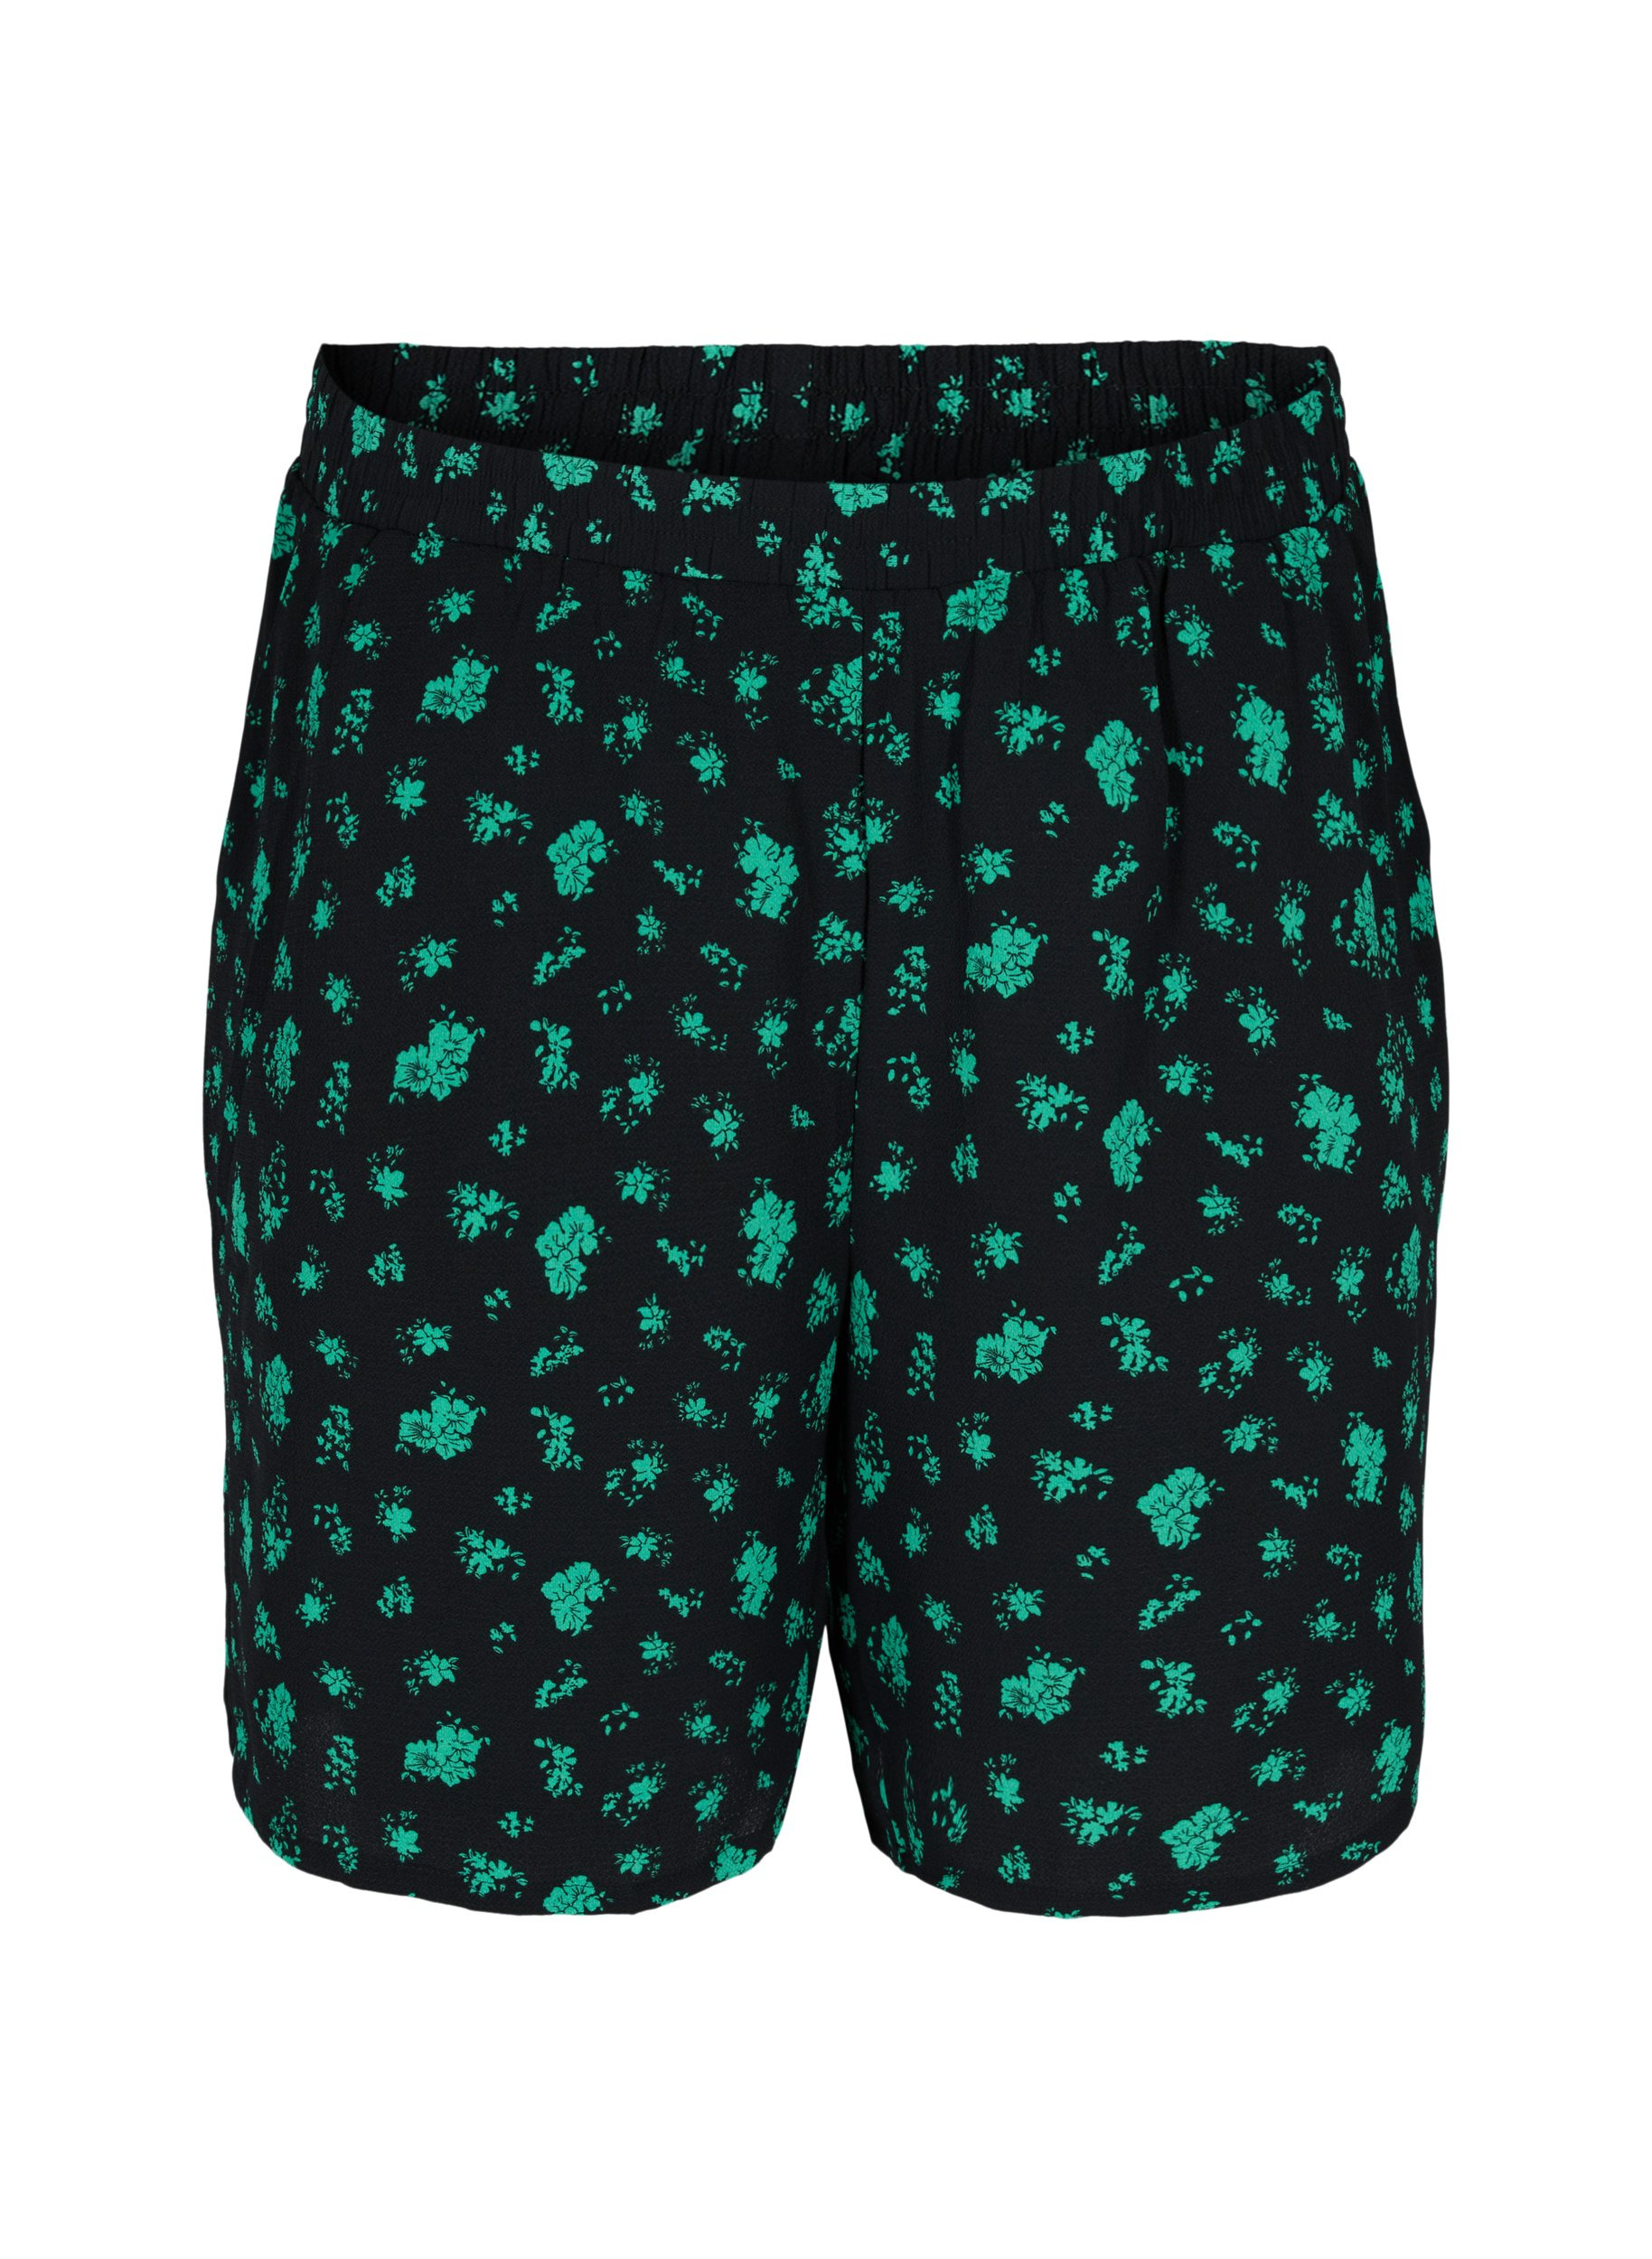 Mønstrete shorts med lommer, Green Flower AOP